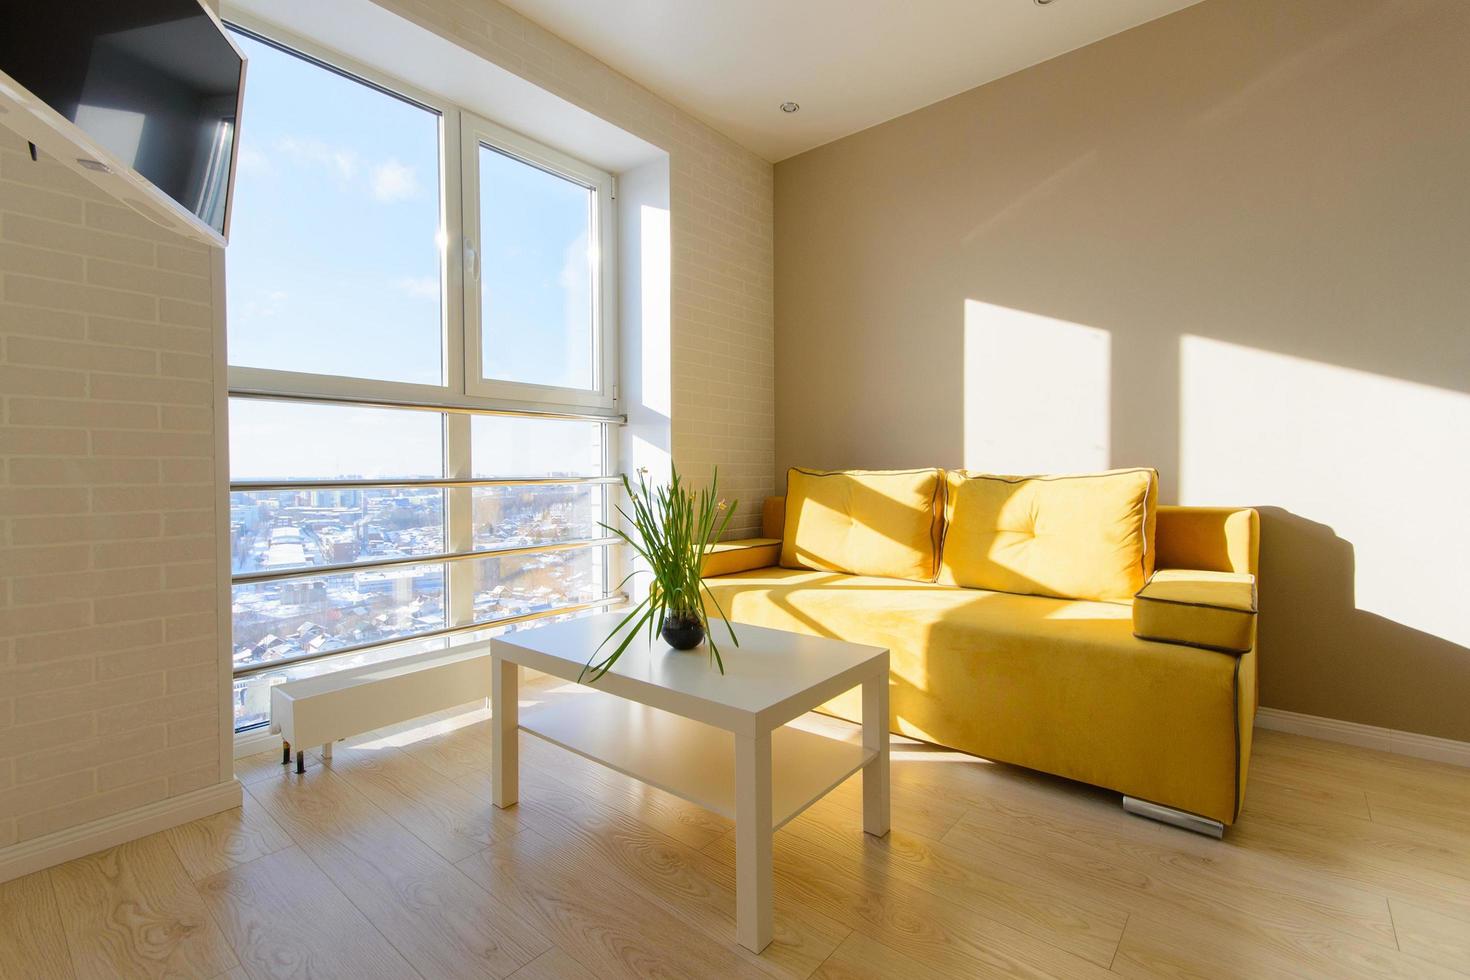 moderno y acogedor interior de apartamento, sala de estar con sofá amarillo, mesa baja blanca y tv en la pared, ventana panorámica con hermosa vista a la ciudad. foto